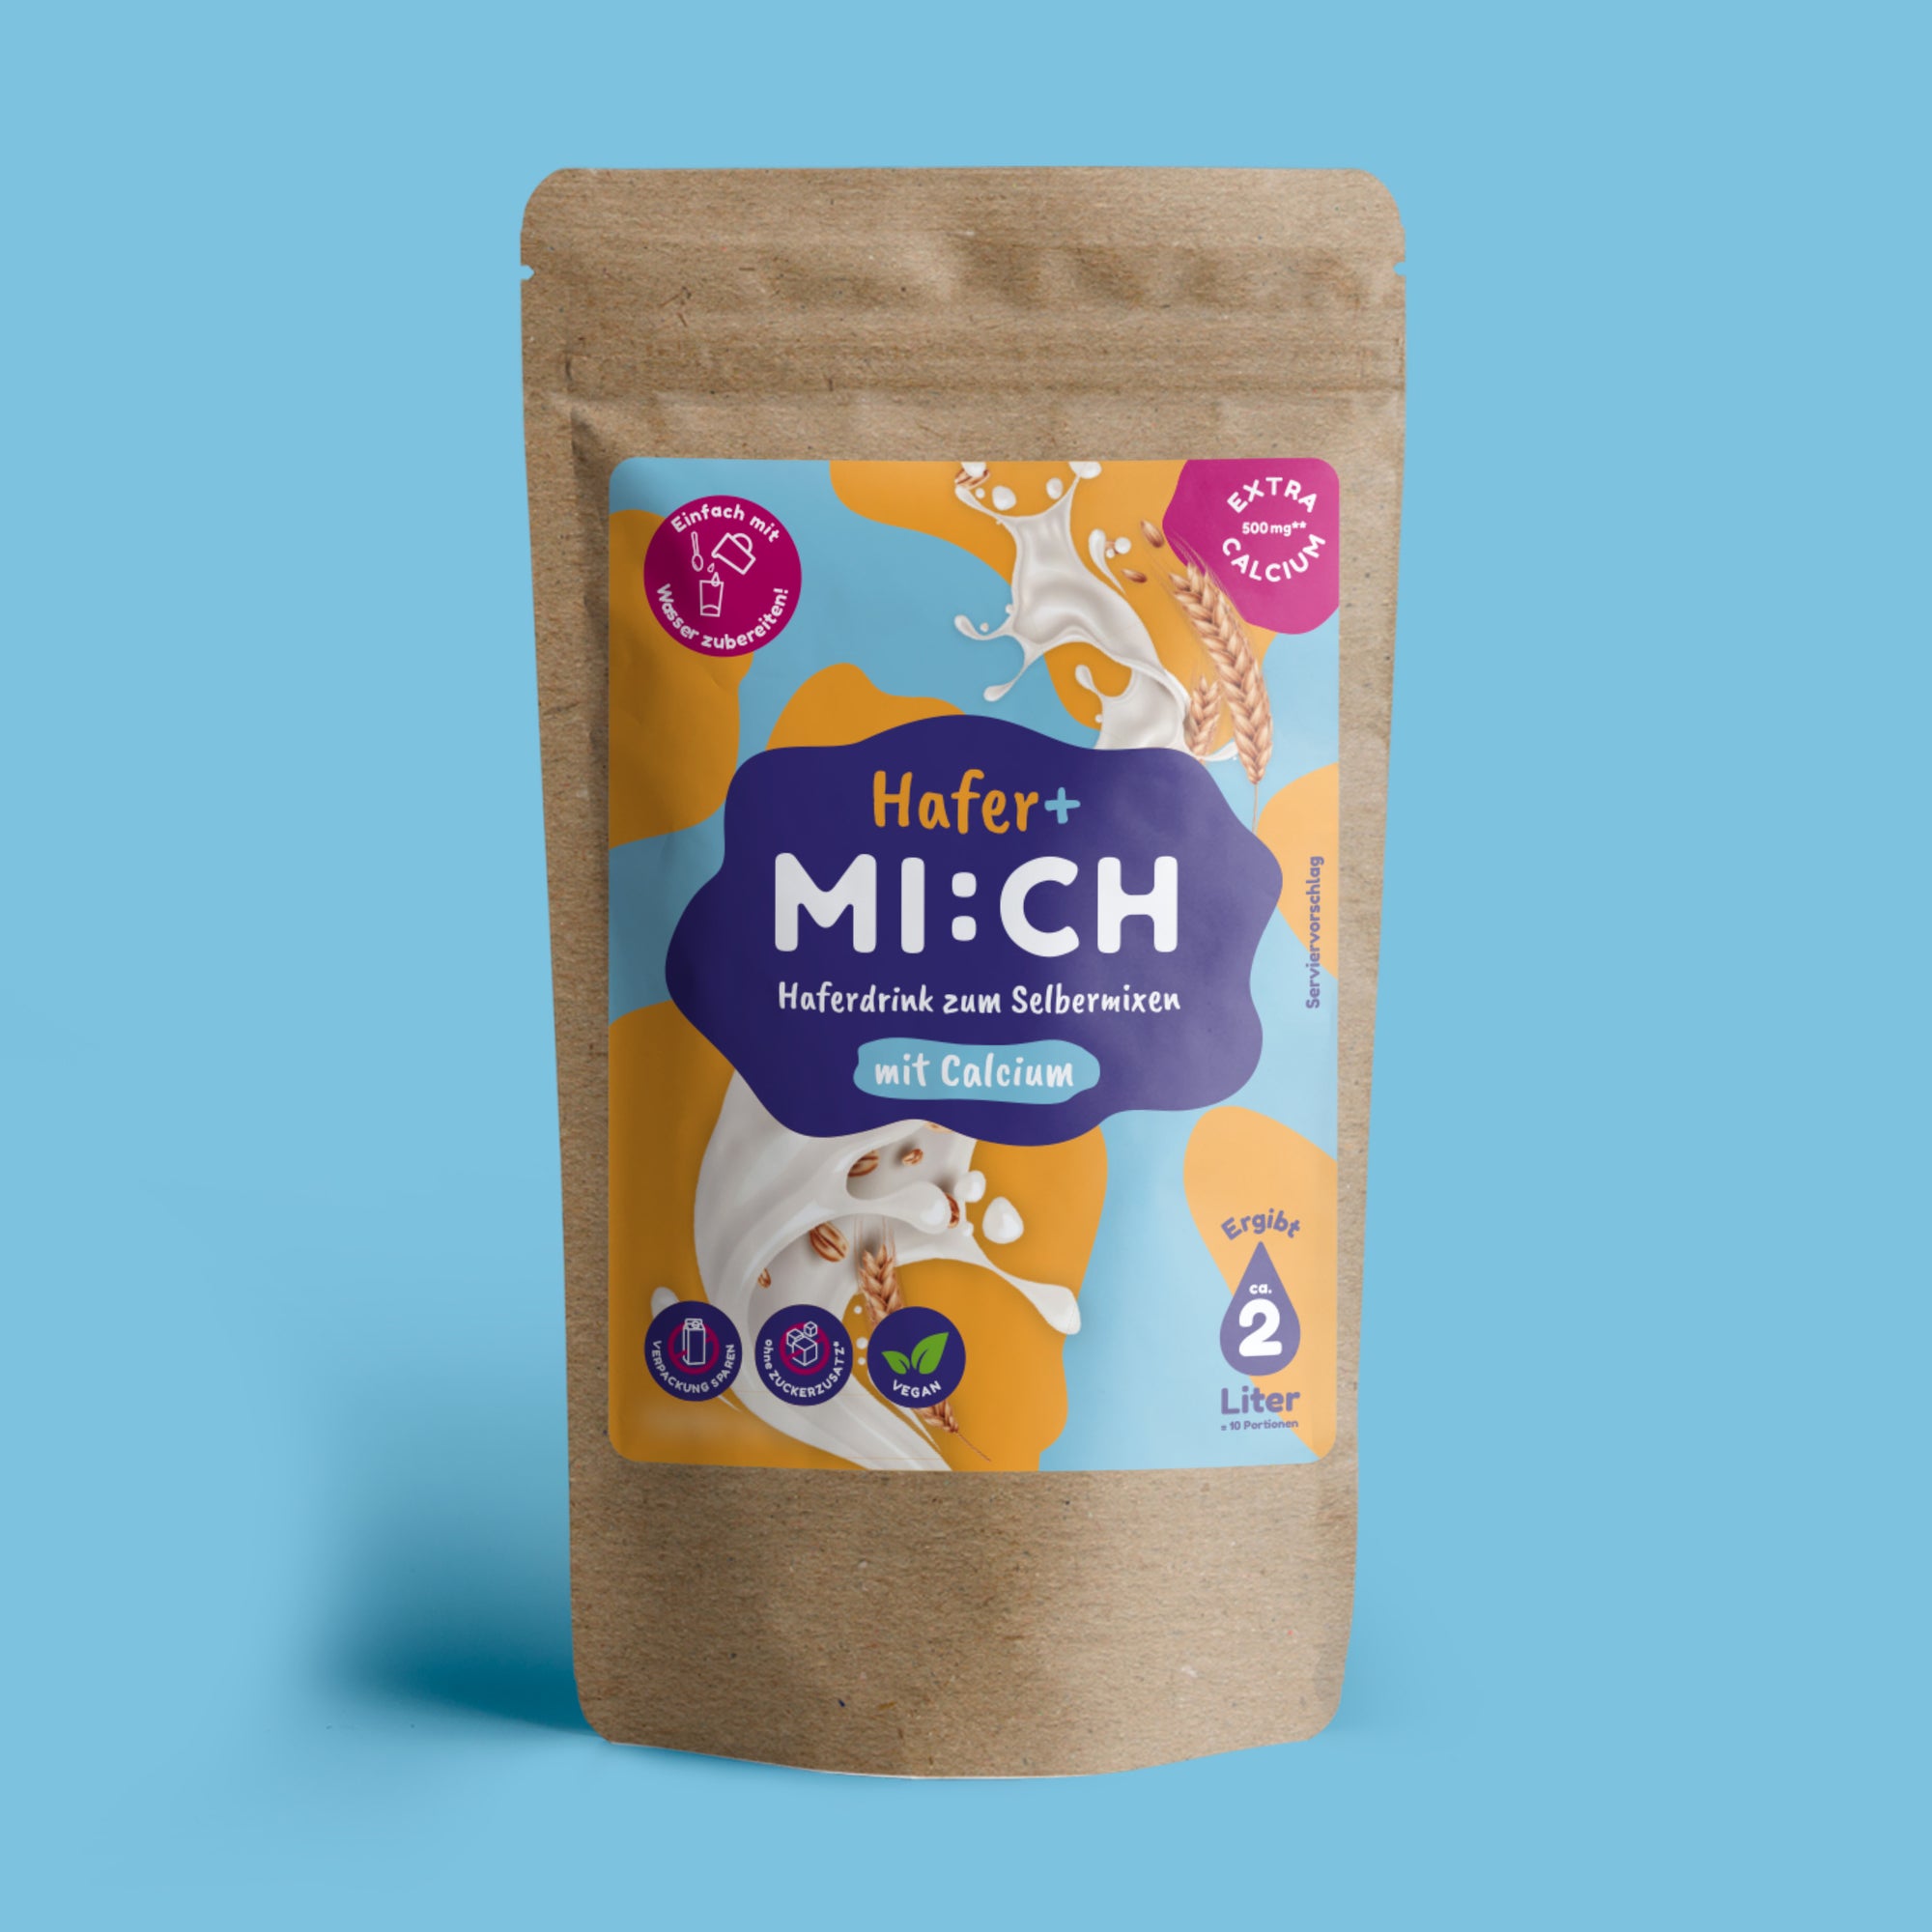 Drinkmich Haferplus Haferdrink zum Selbermixen mit Calcium perfekt für Kleinkinder produktbild vor hellblauem Hintergrund